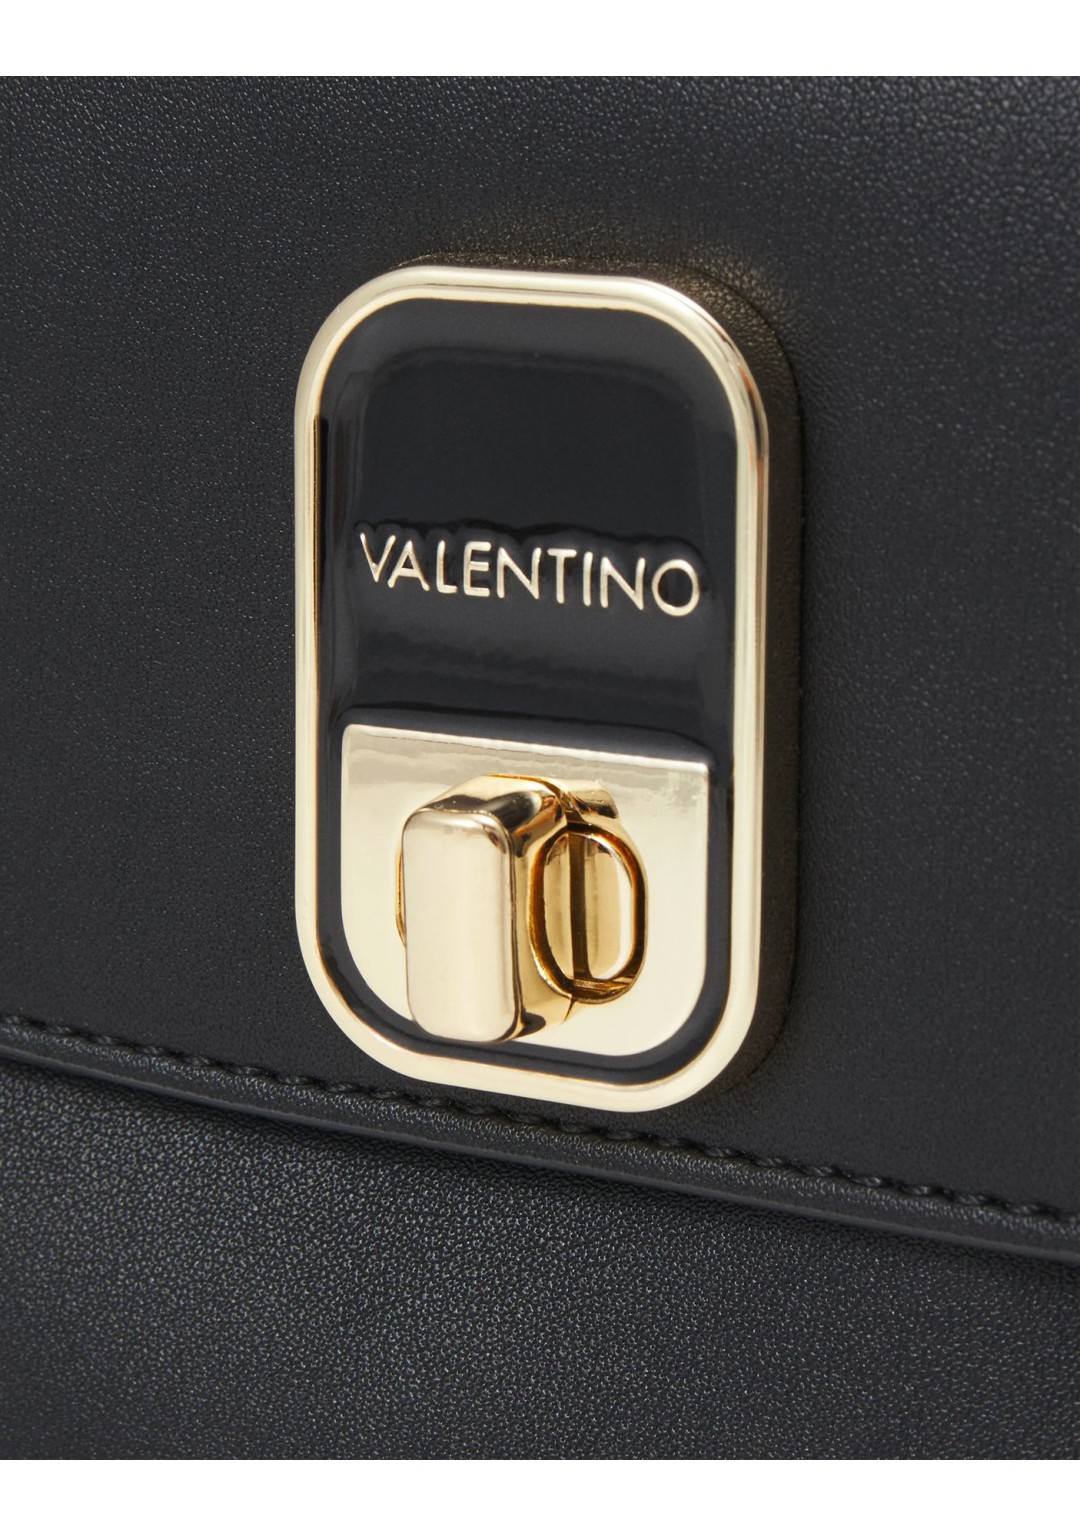 Valentino - Shopper Tasca - Donna - LODGE RE GL01